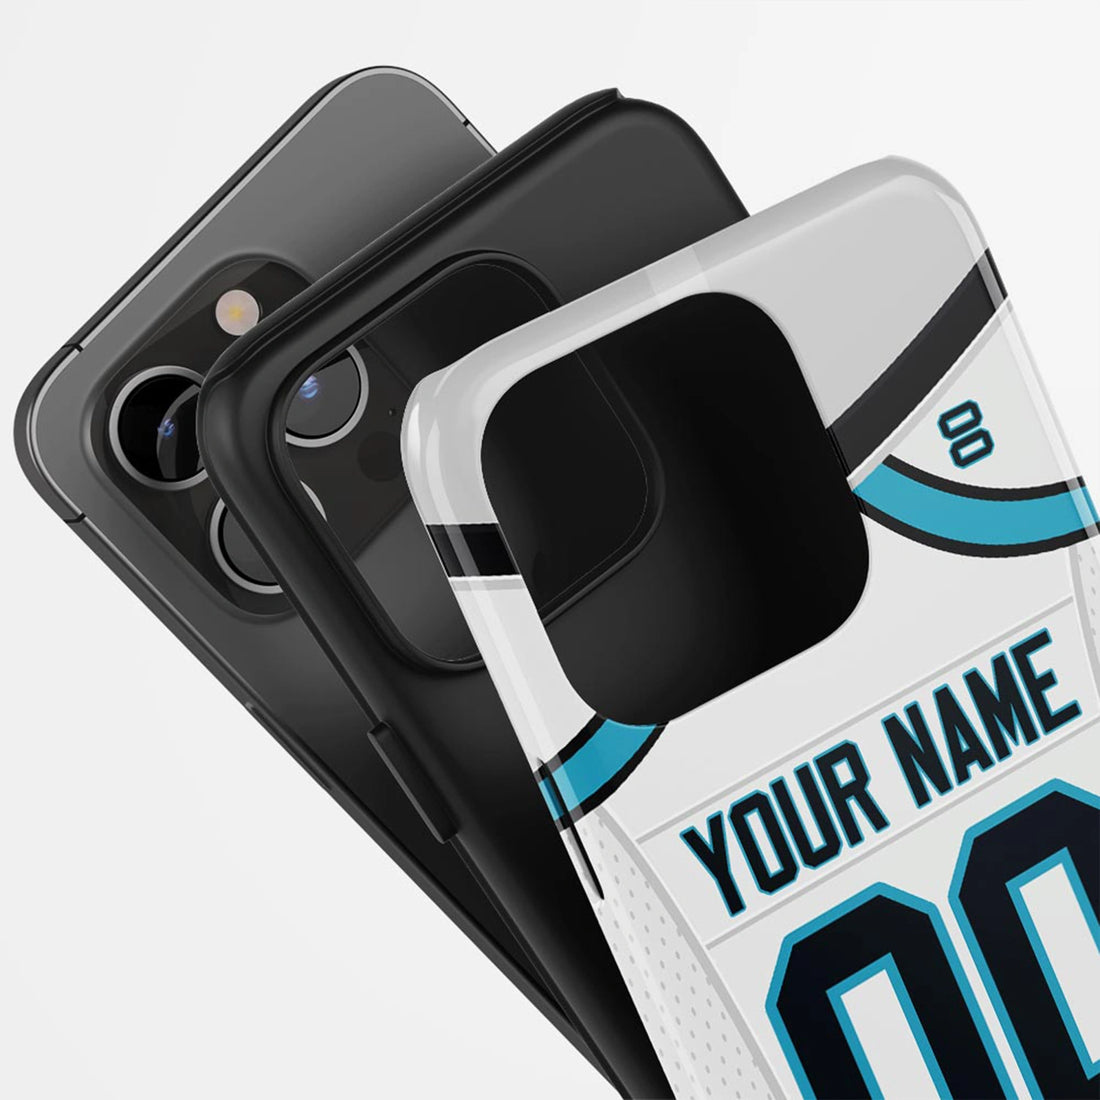 Carolina Panthers custom jersey tough phone case nfl super bowl